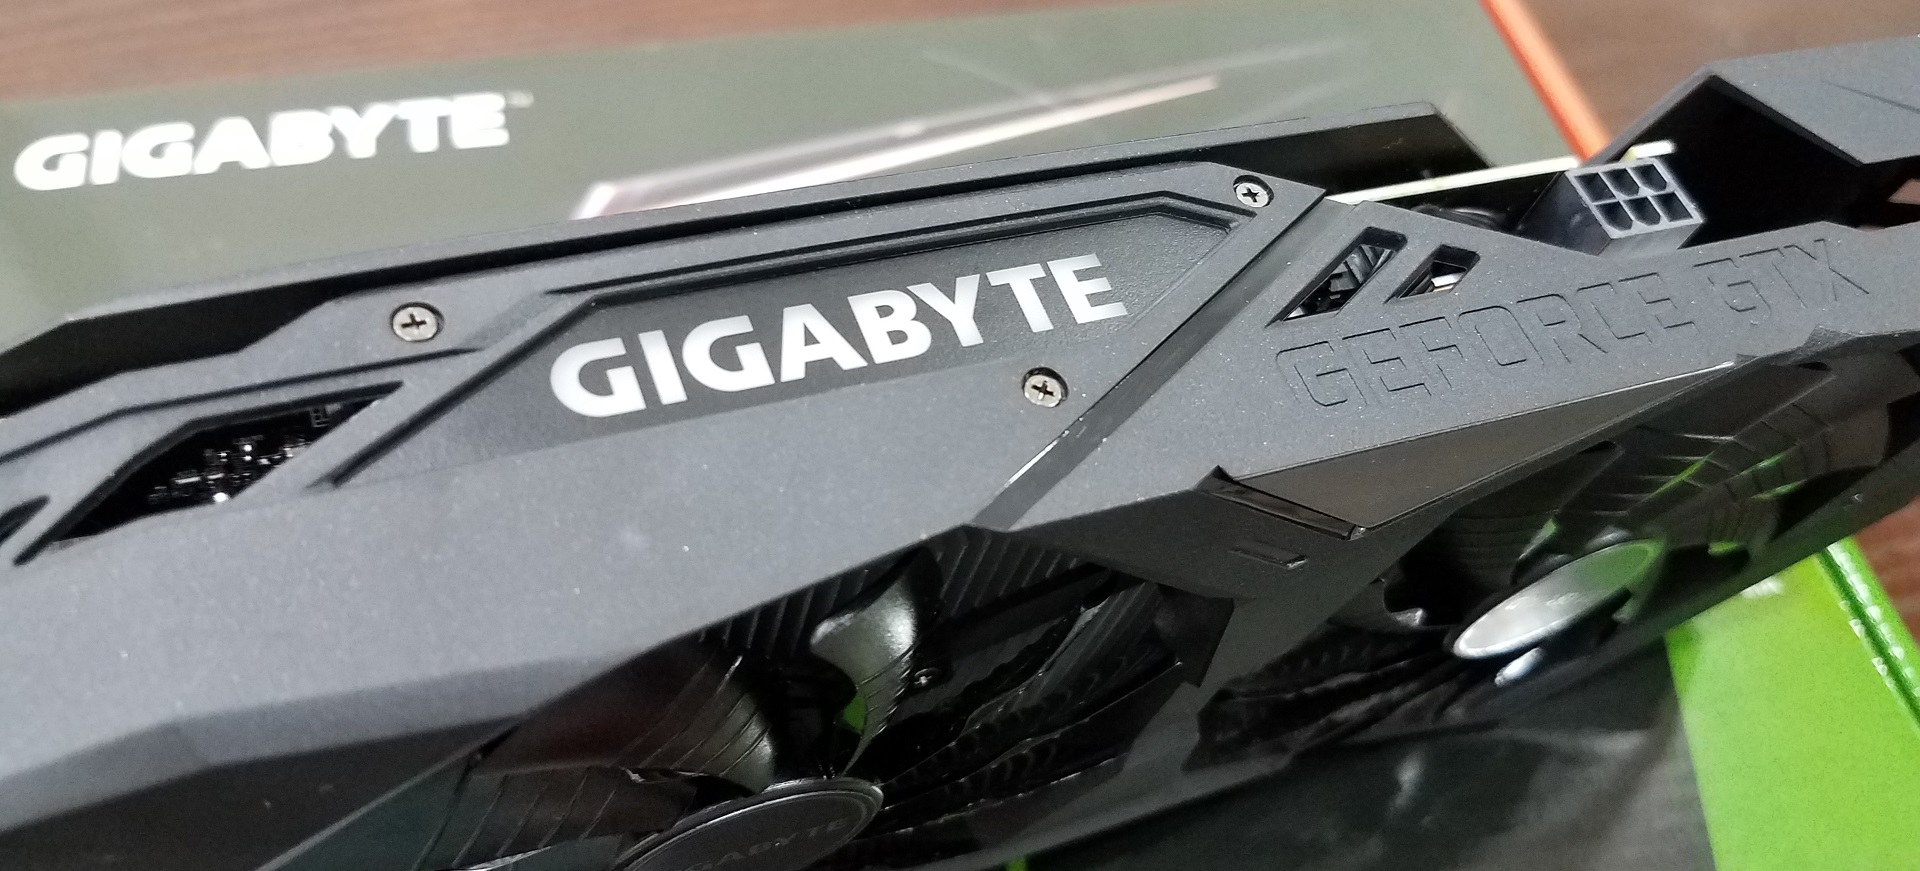 gigabyte gtx 1650 gaming oc 4g